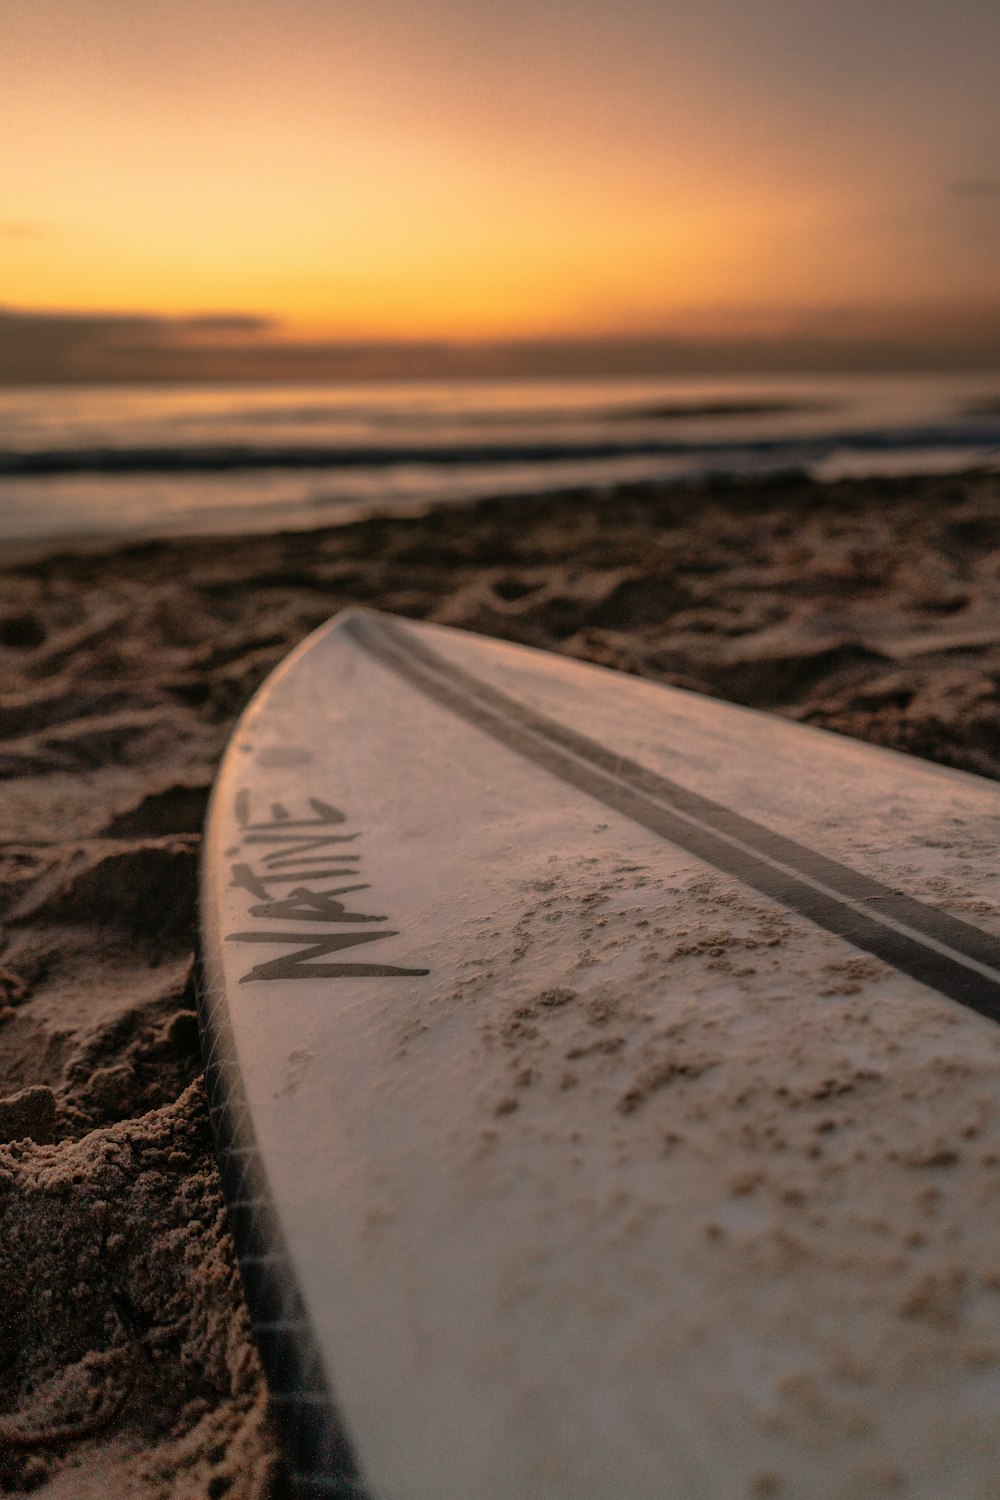 夕暮れ時の茶色の砂浜に白いサーフボード